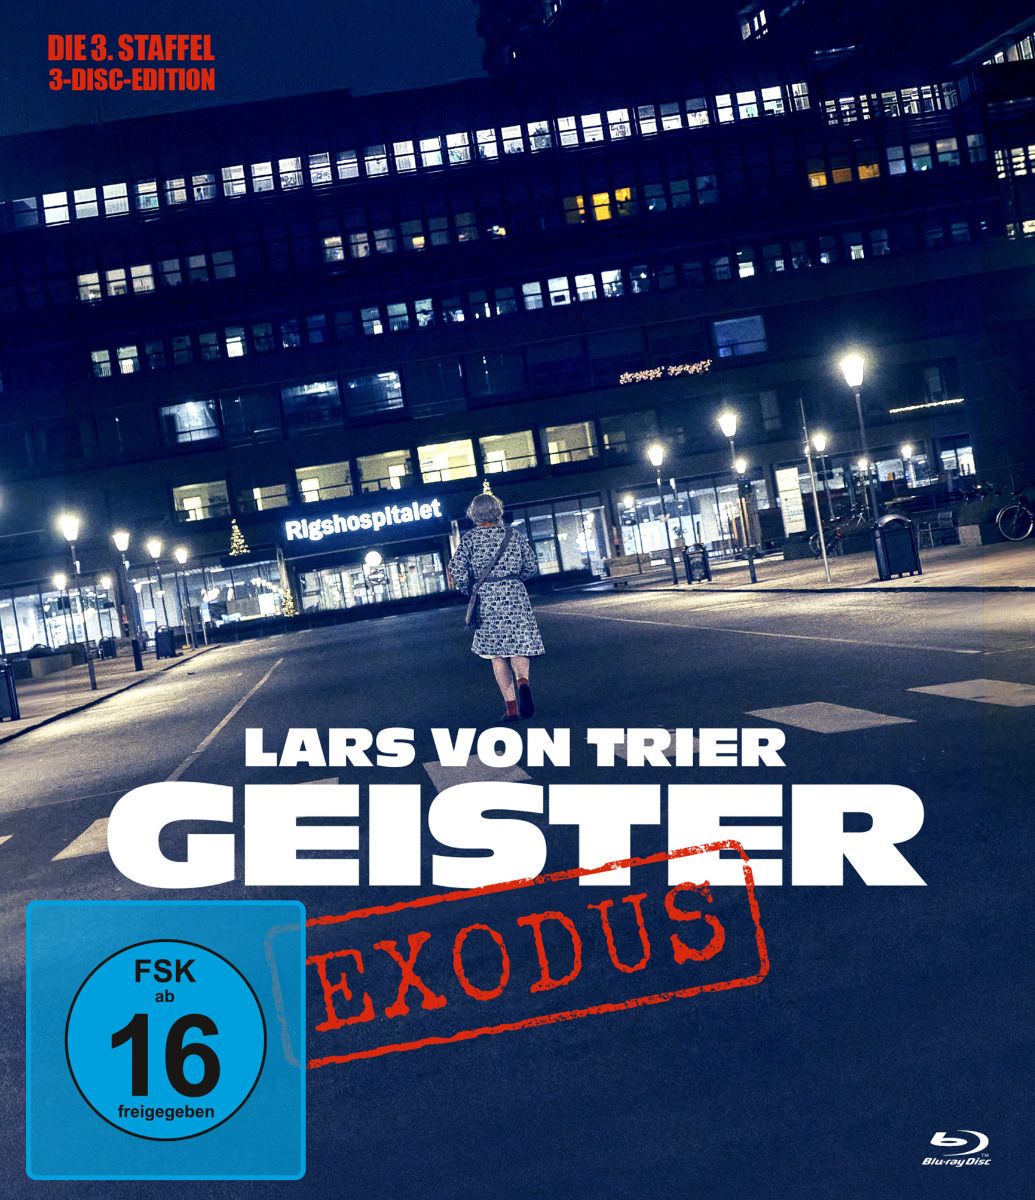 Lars von Trier Geister: Exodus (Blu-Ray) (3Discs) - Staffel 3